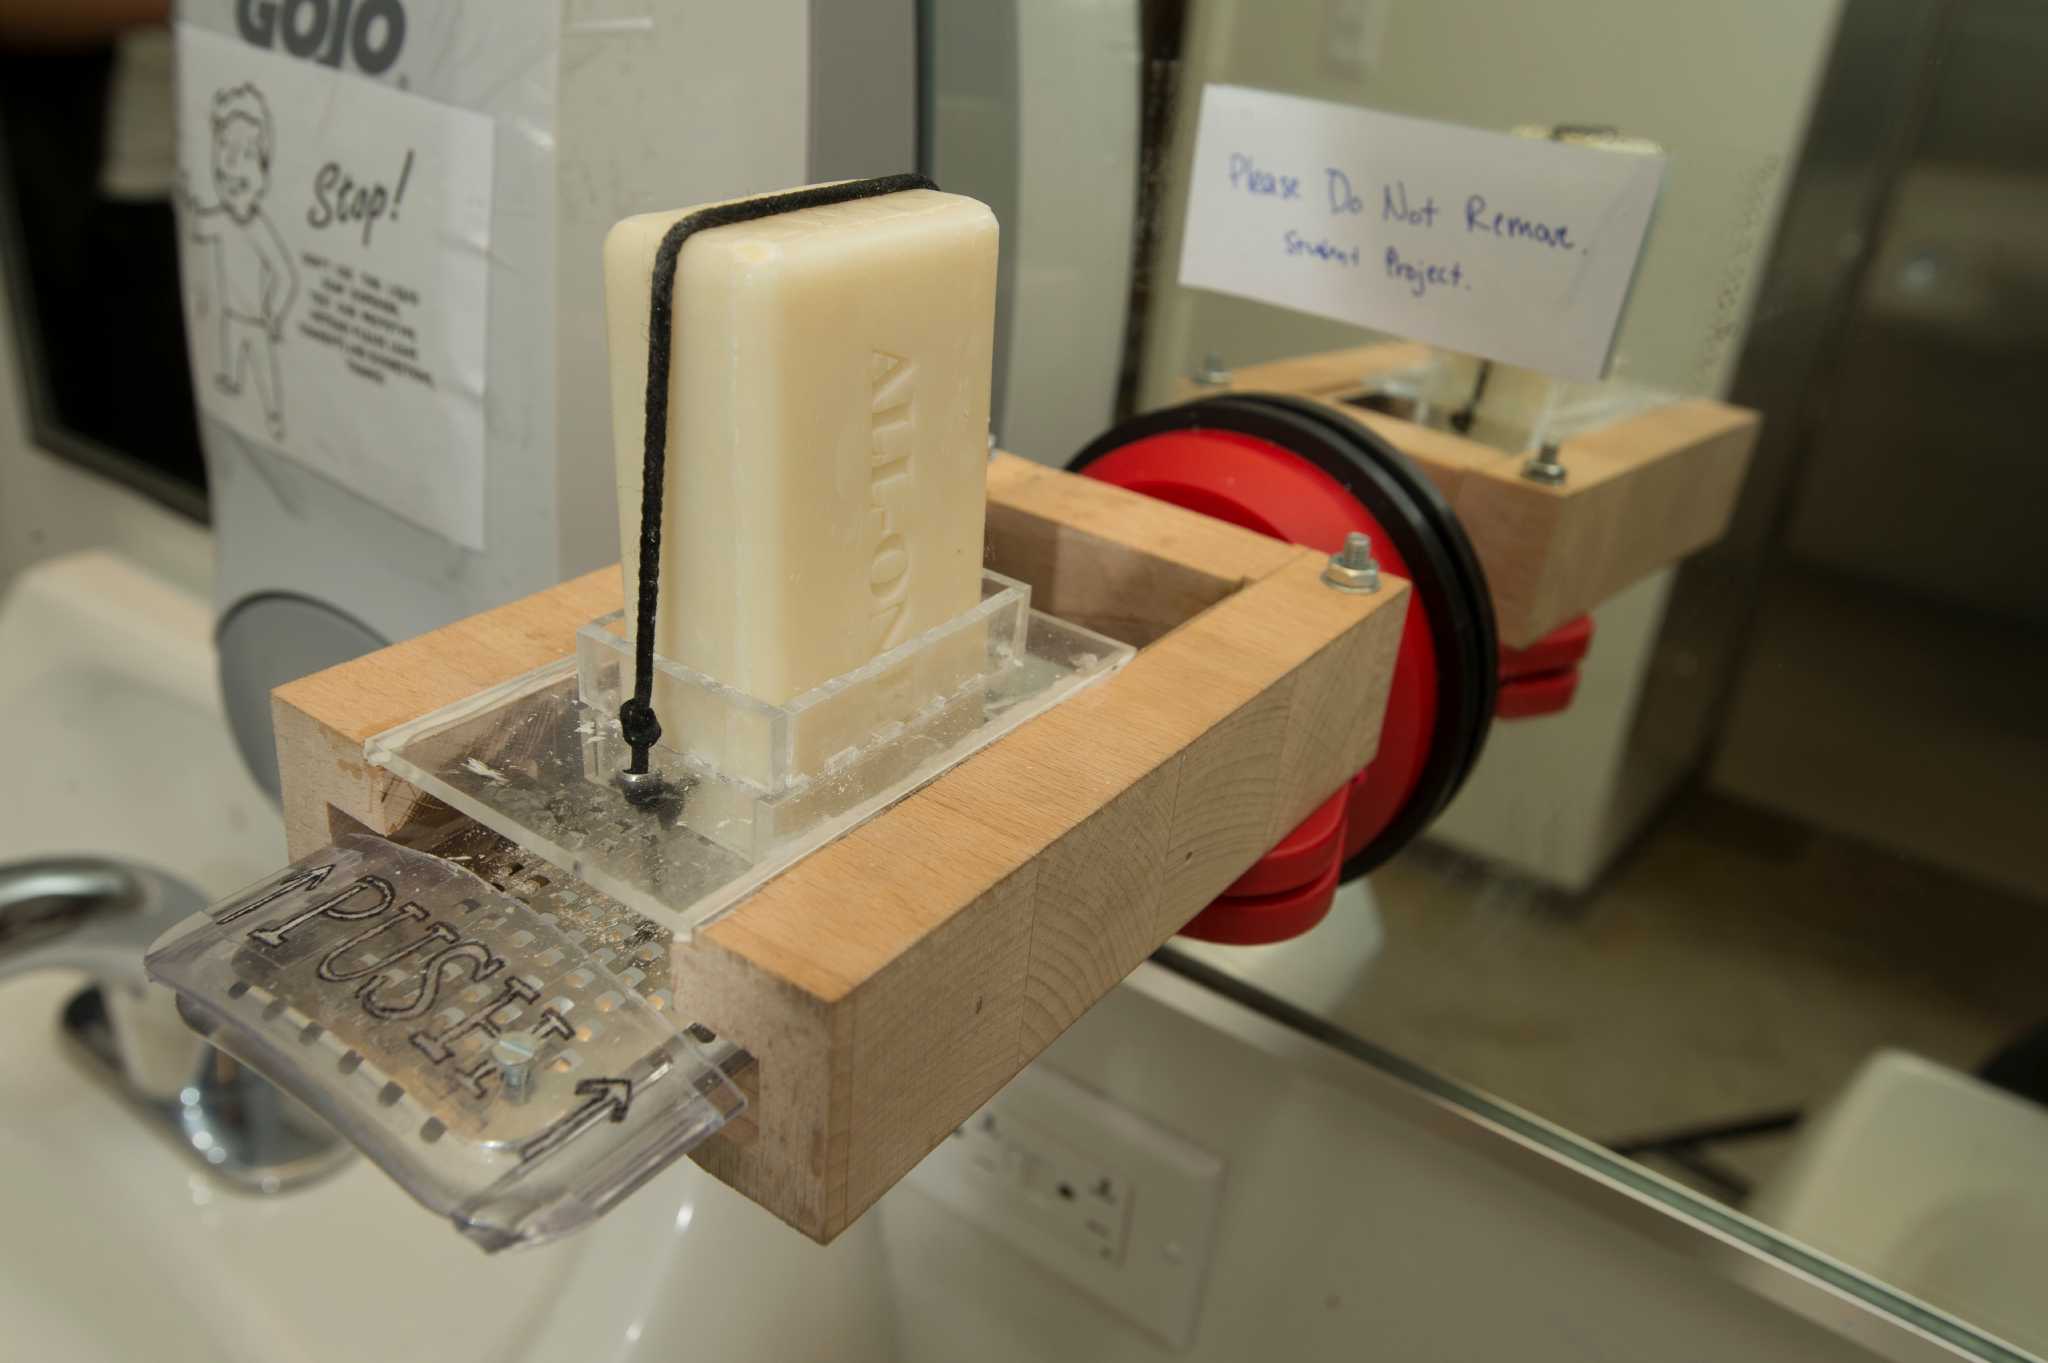 bar soap dispenser